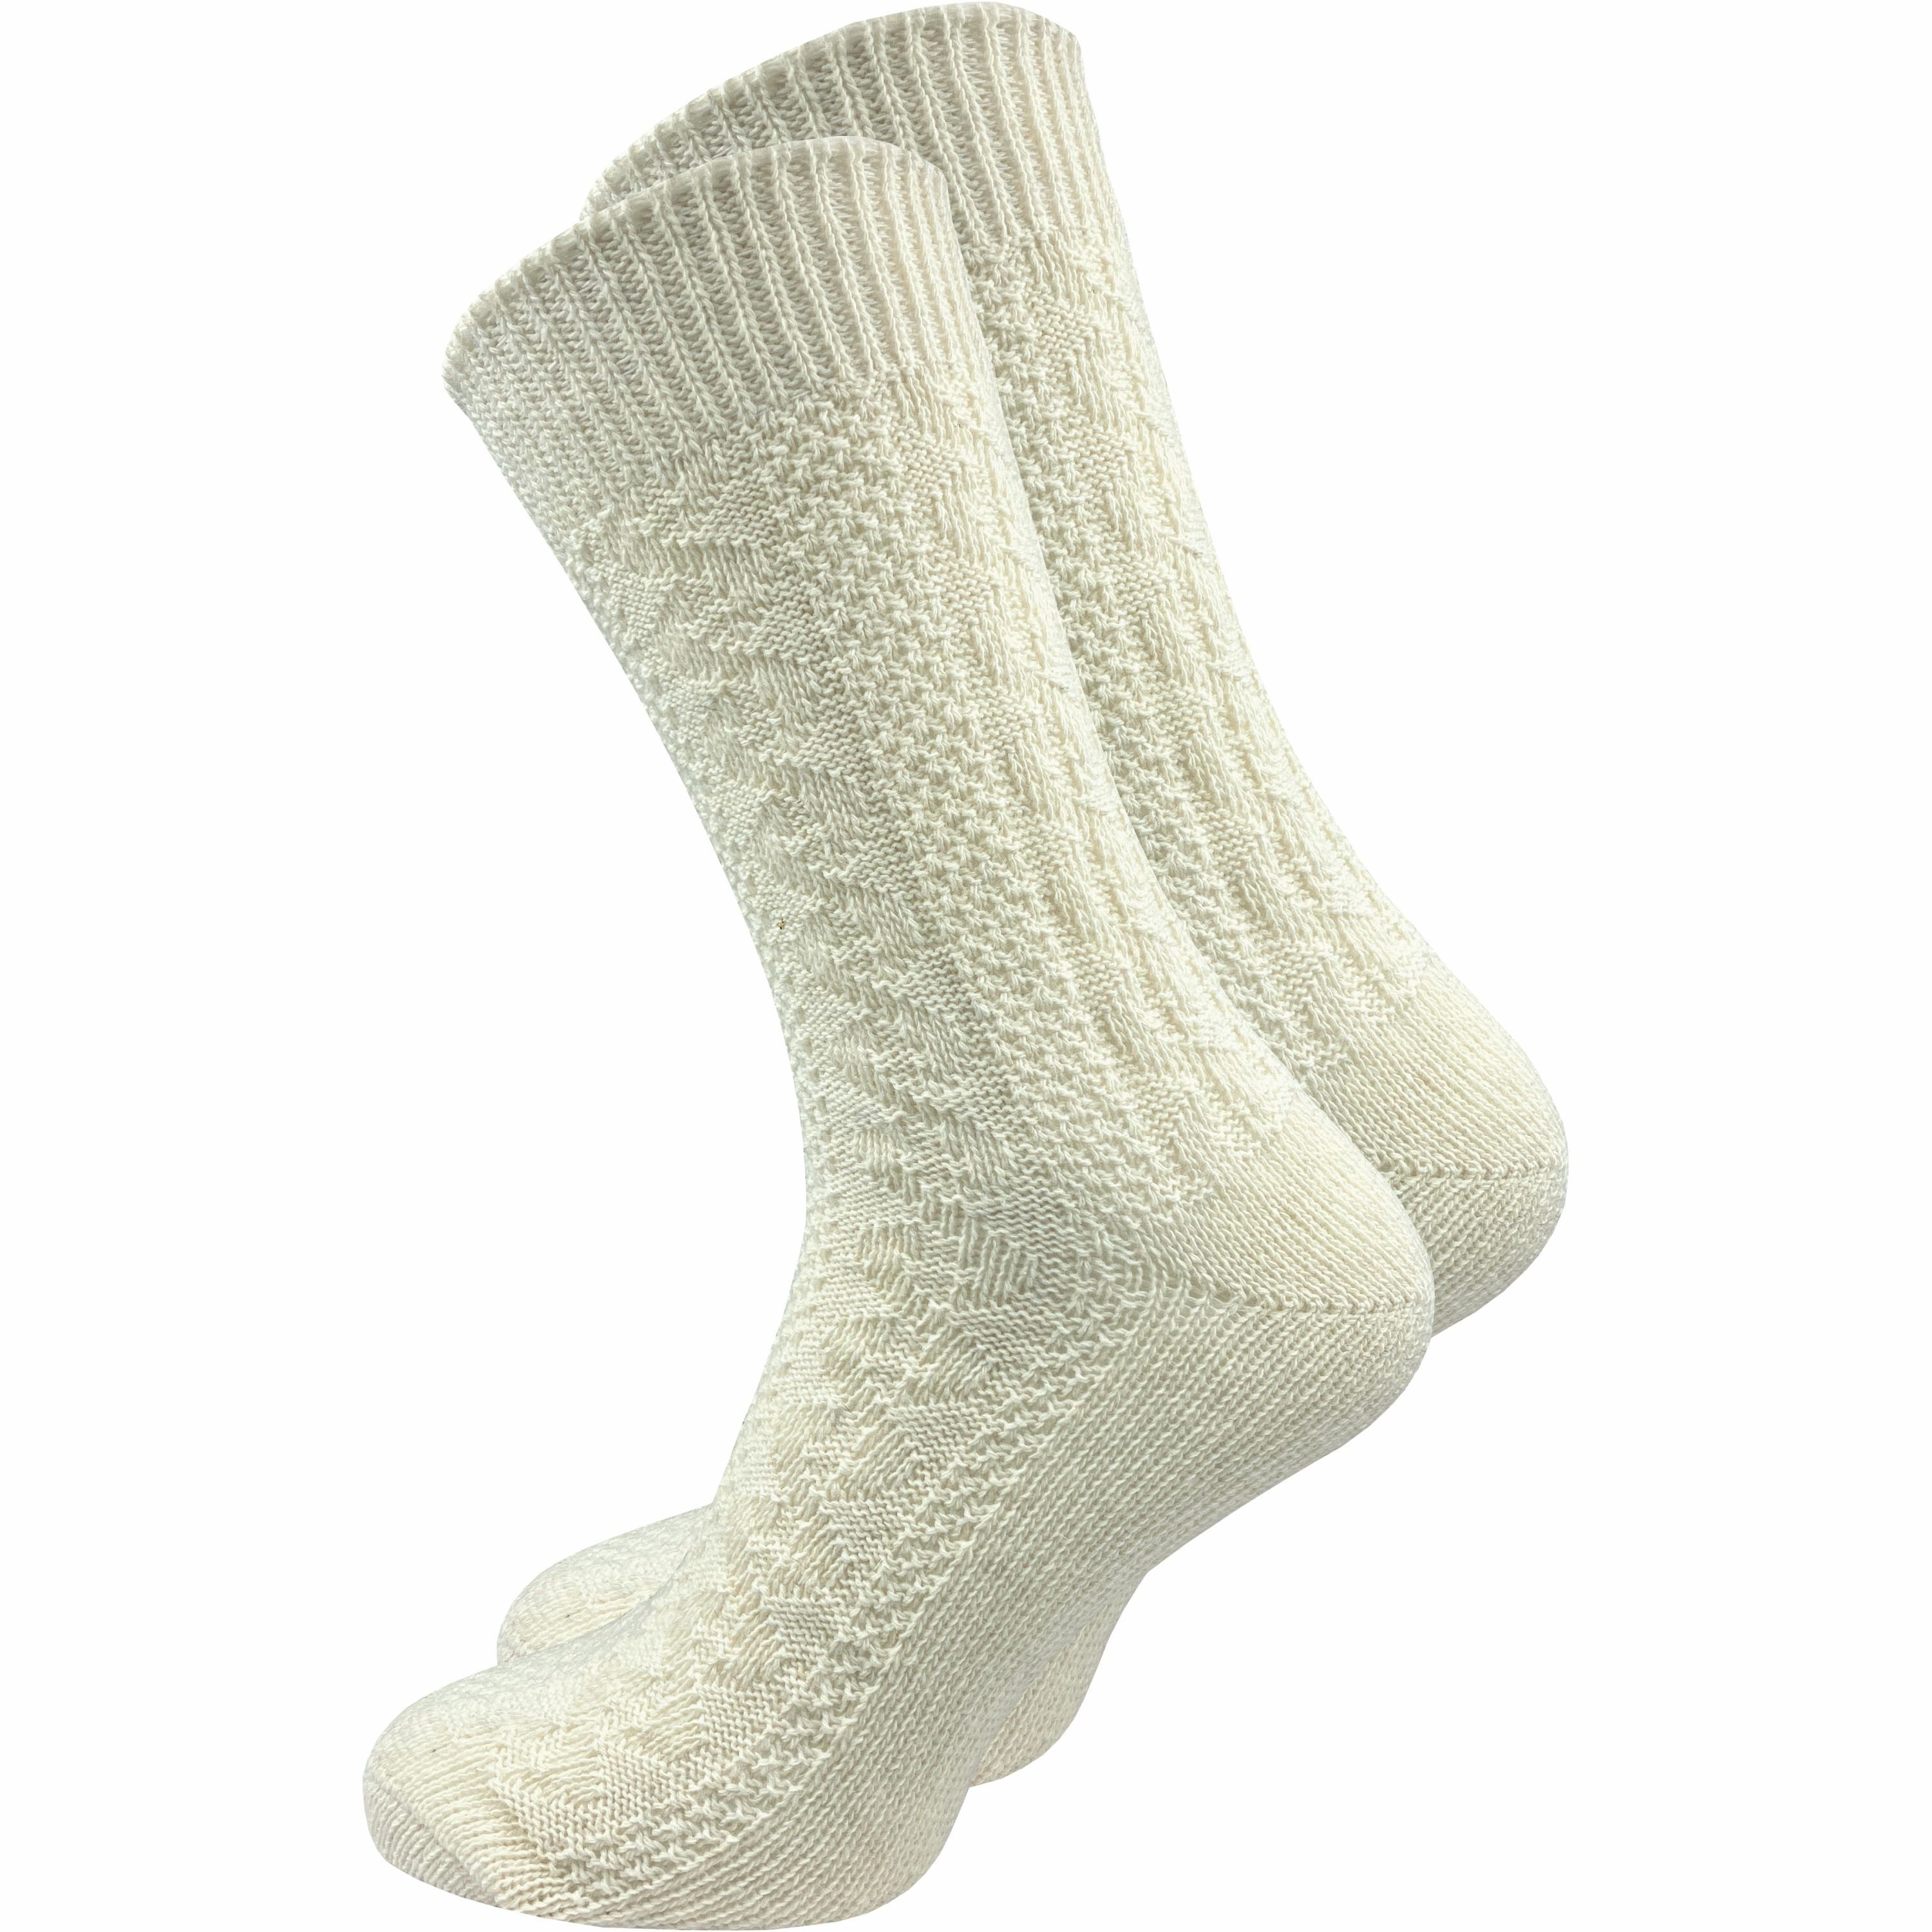 GAWILO Традиційні шкарпетки für Herren mit urigem Zopfmuster in grau & natur mit Komfortbund (1 Paar) Ideale Ergänzung für Ihre Lederhose auf dem Oktoberfest oder Wasen